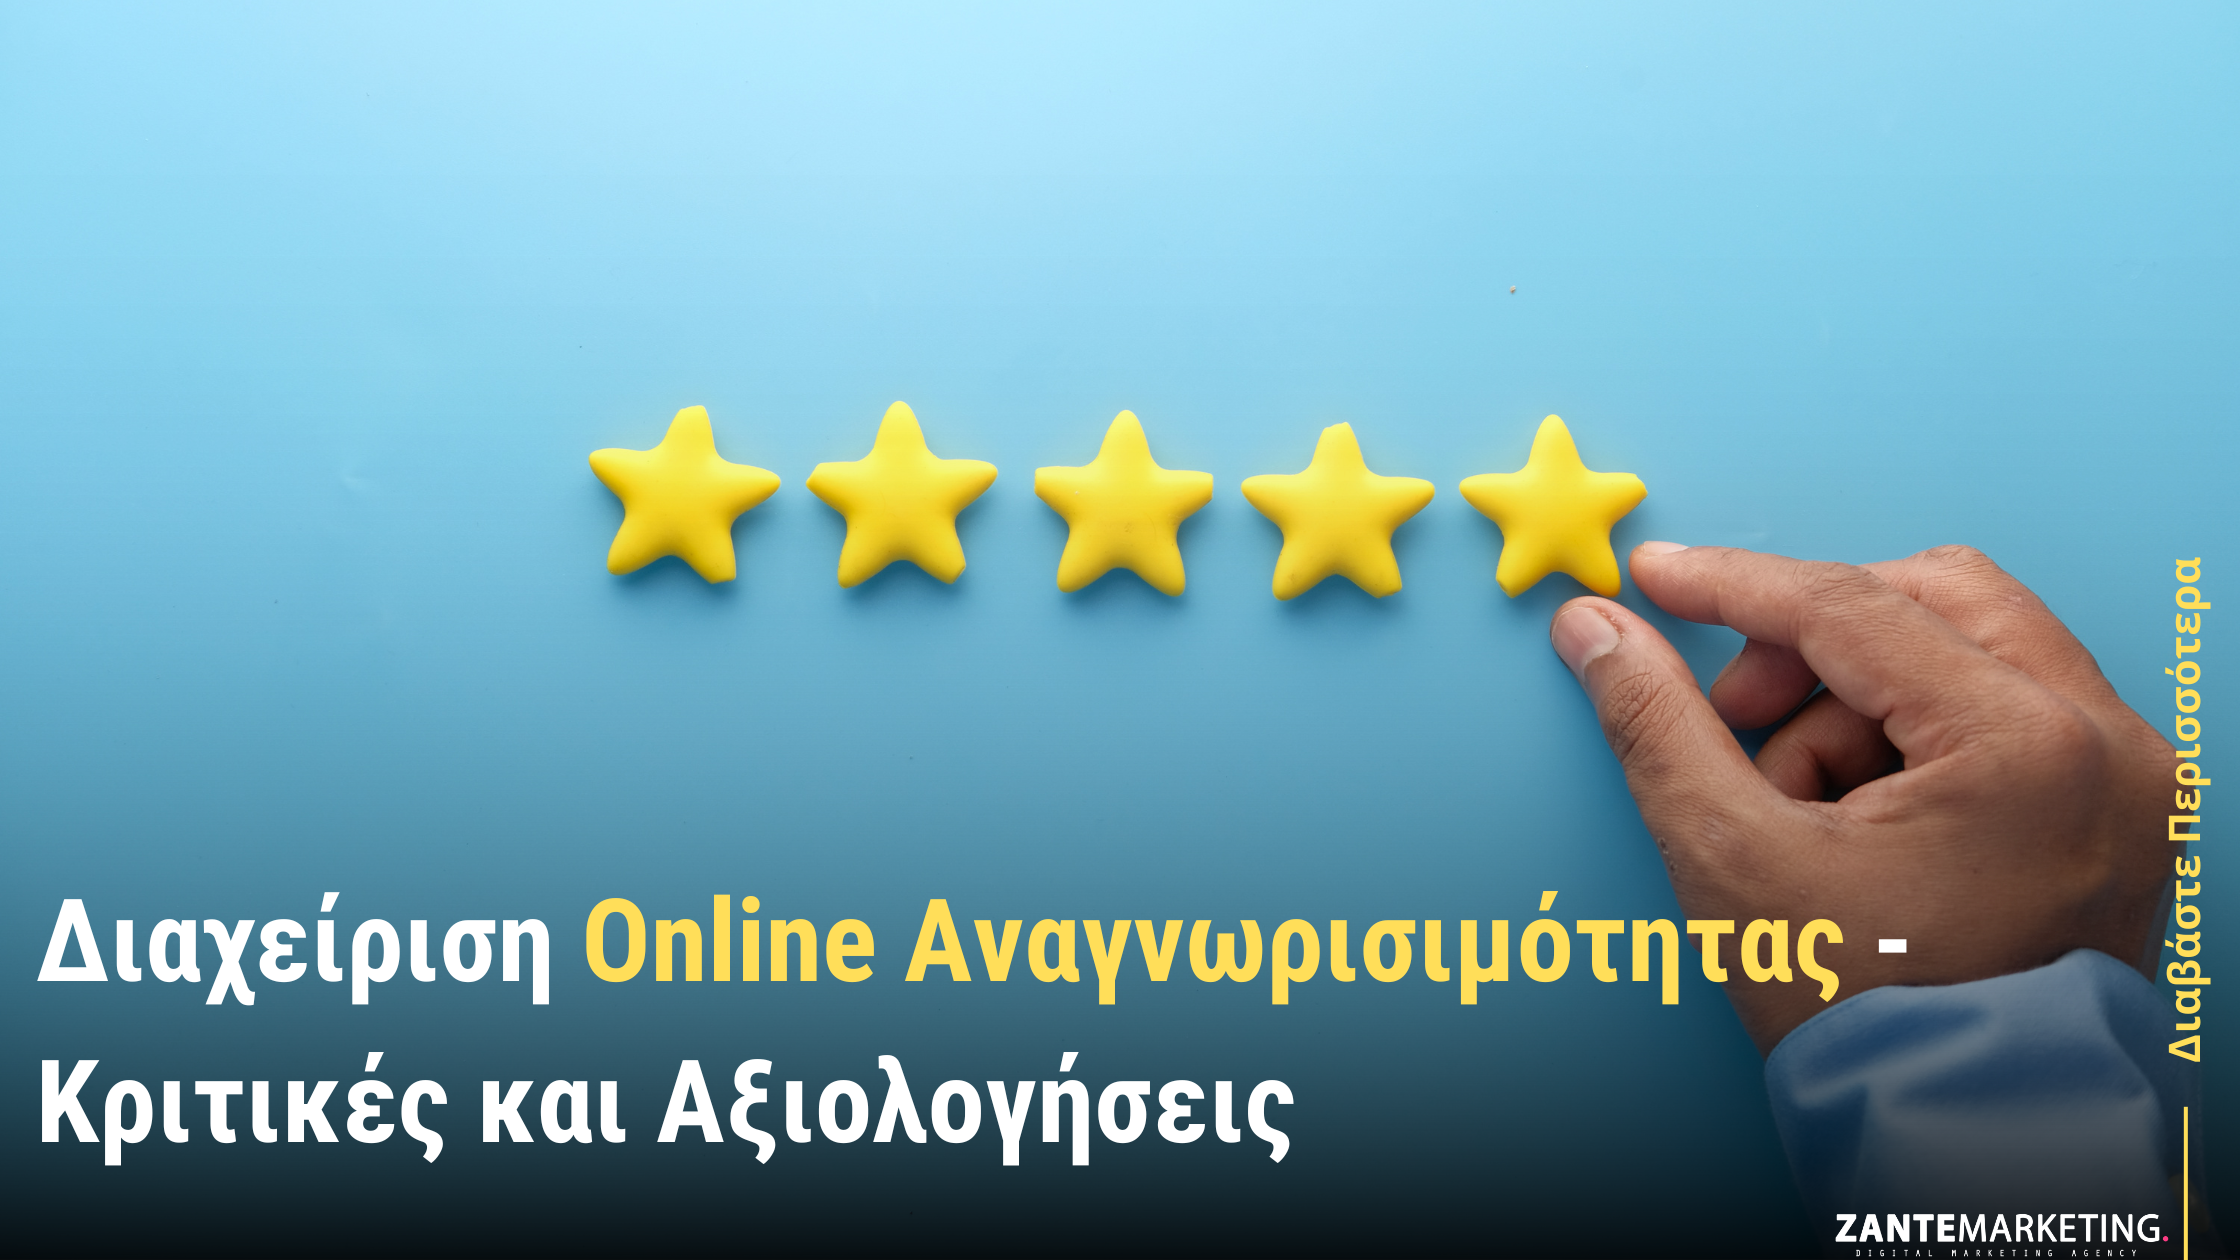 Διαχείριση Online Αναγνωρισιμότητας - Κριτικές και Αξιολογήσεις